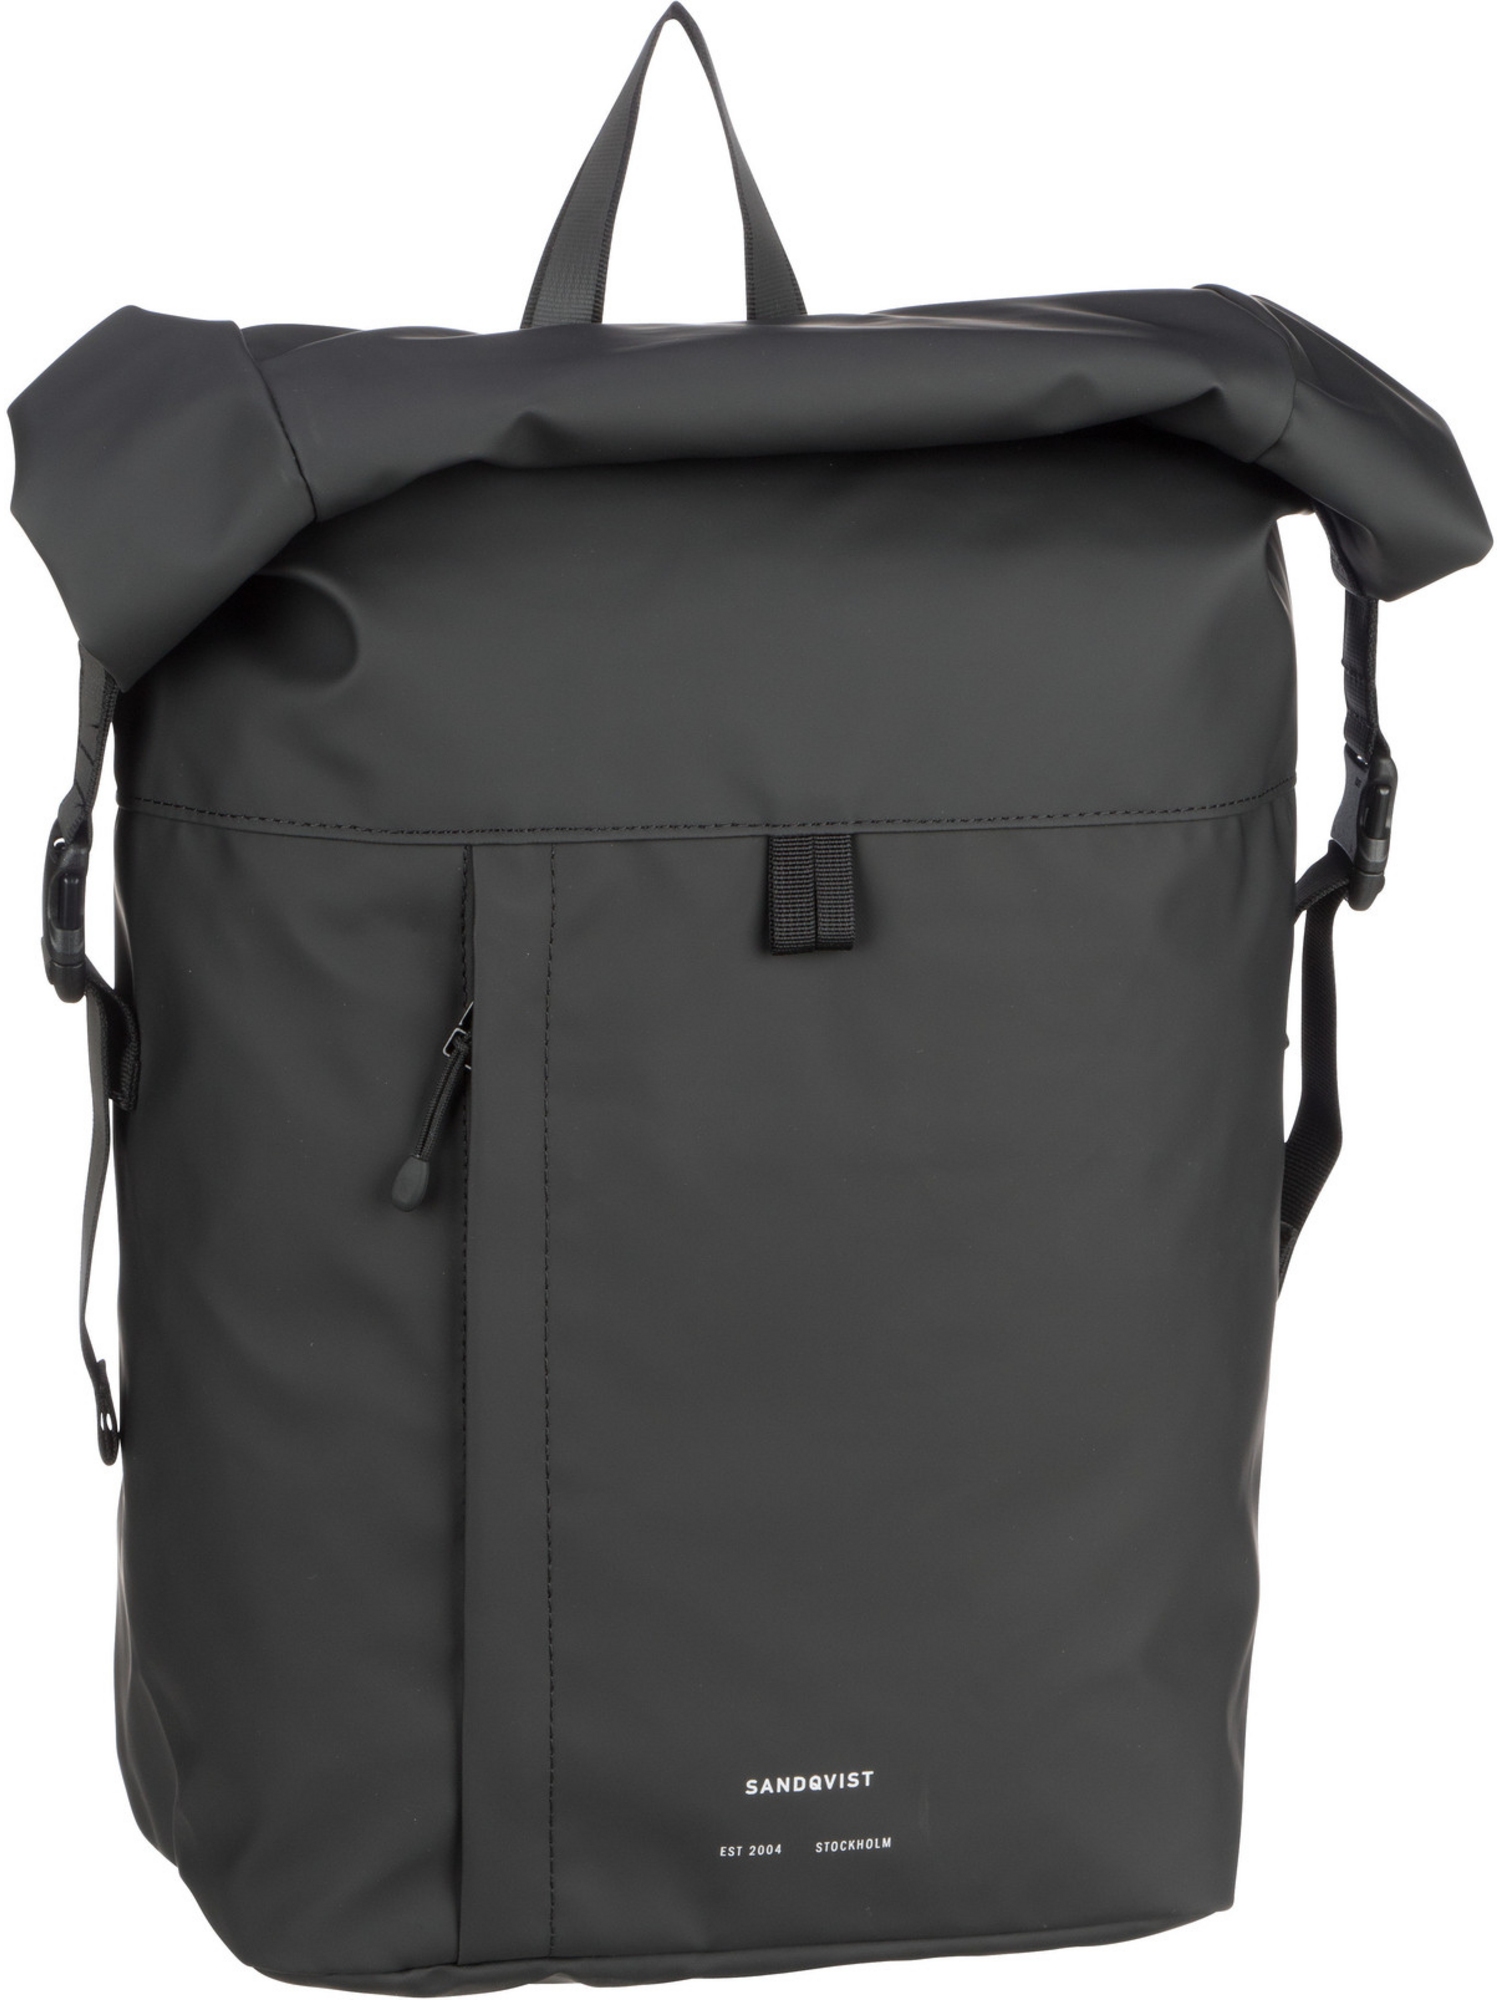 Рюкзак SANDQVIST/Backpack Konrad Backpack, черный рюкзак sandqvist konrad bronze